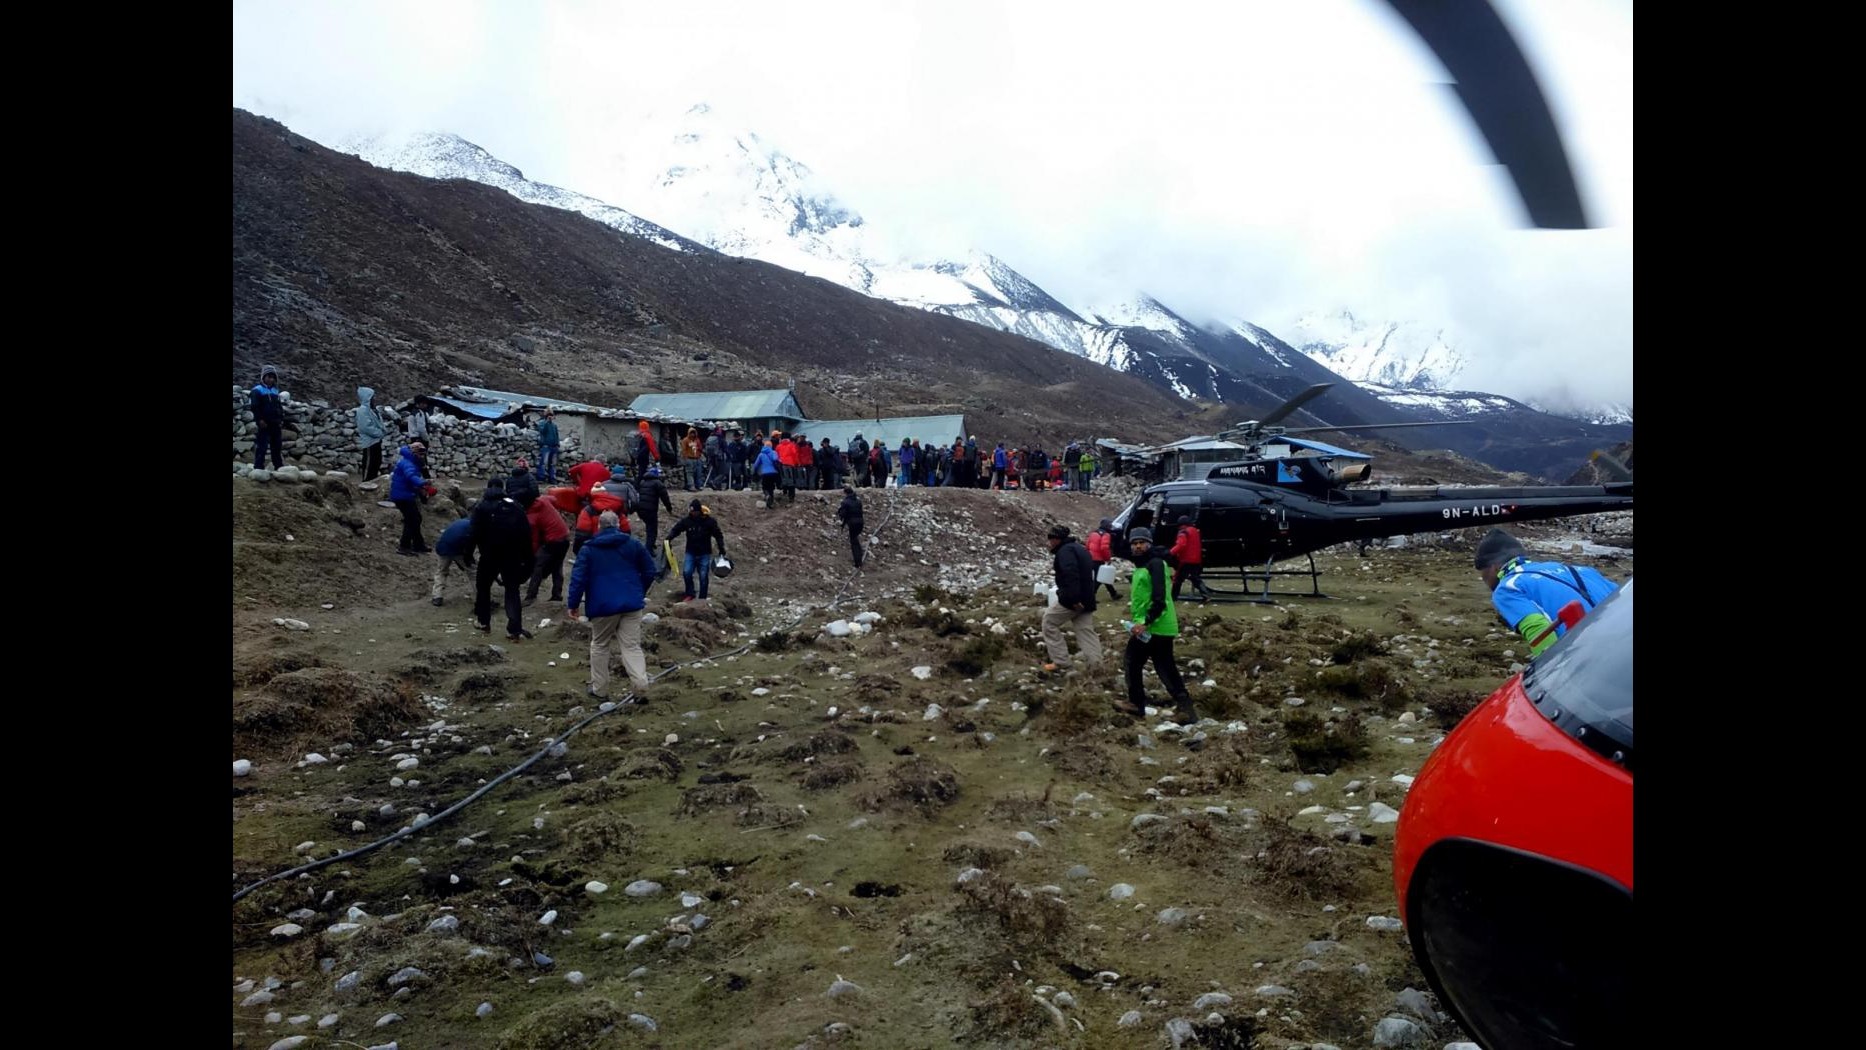 Sisma Nepal, valanga sull’Everest: 22 morti e 217 dispersi